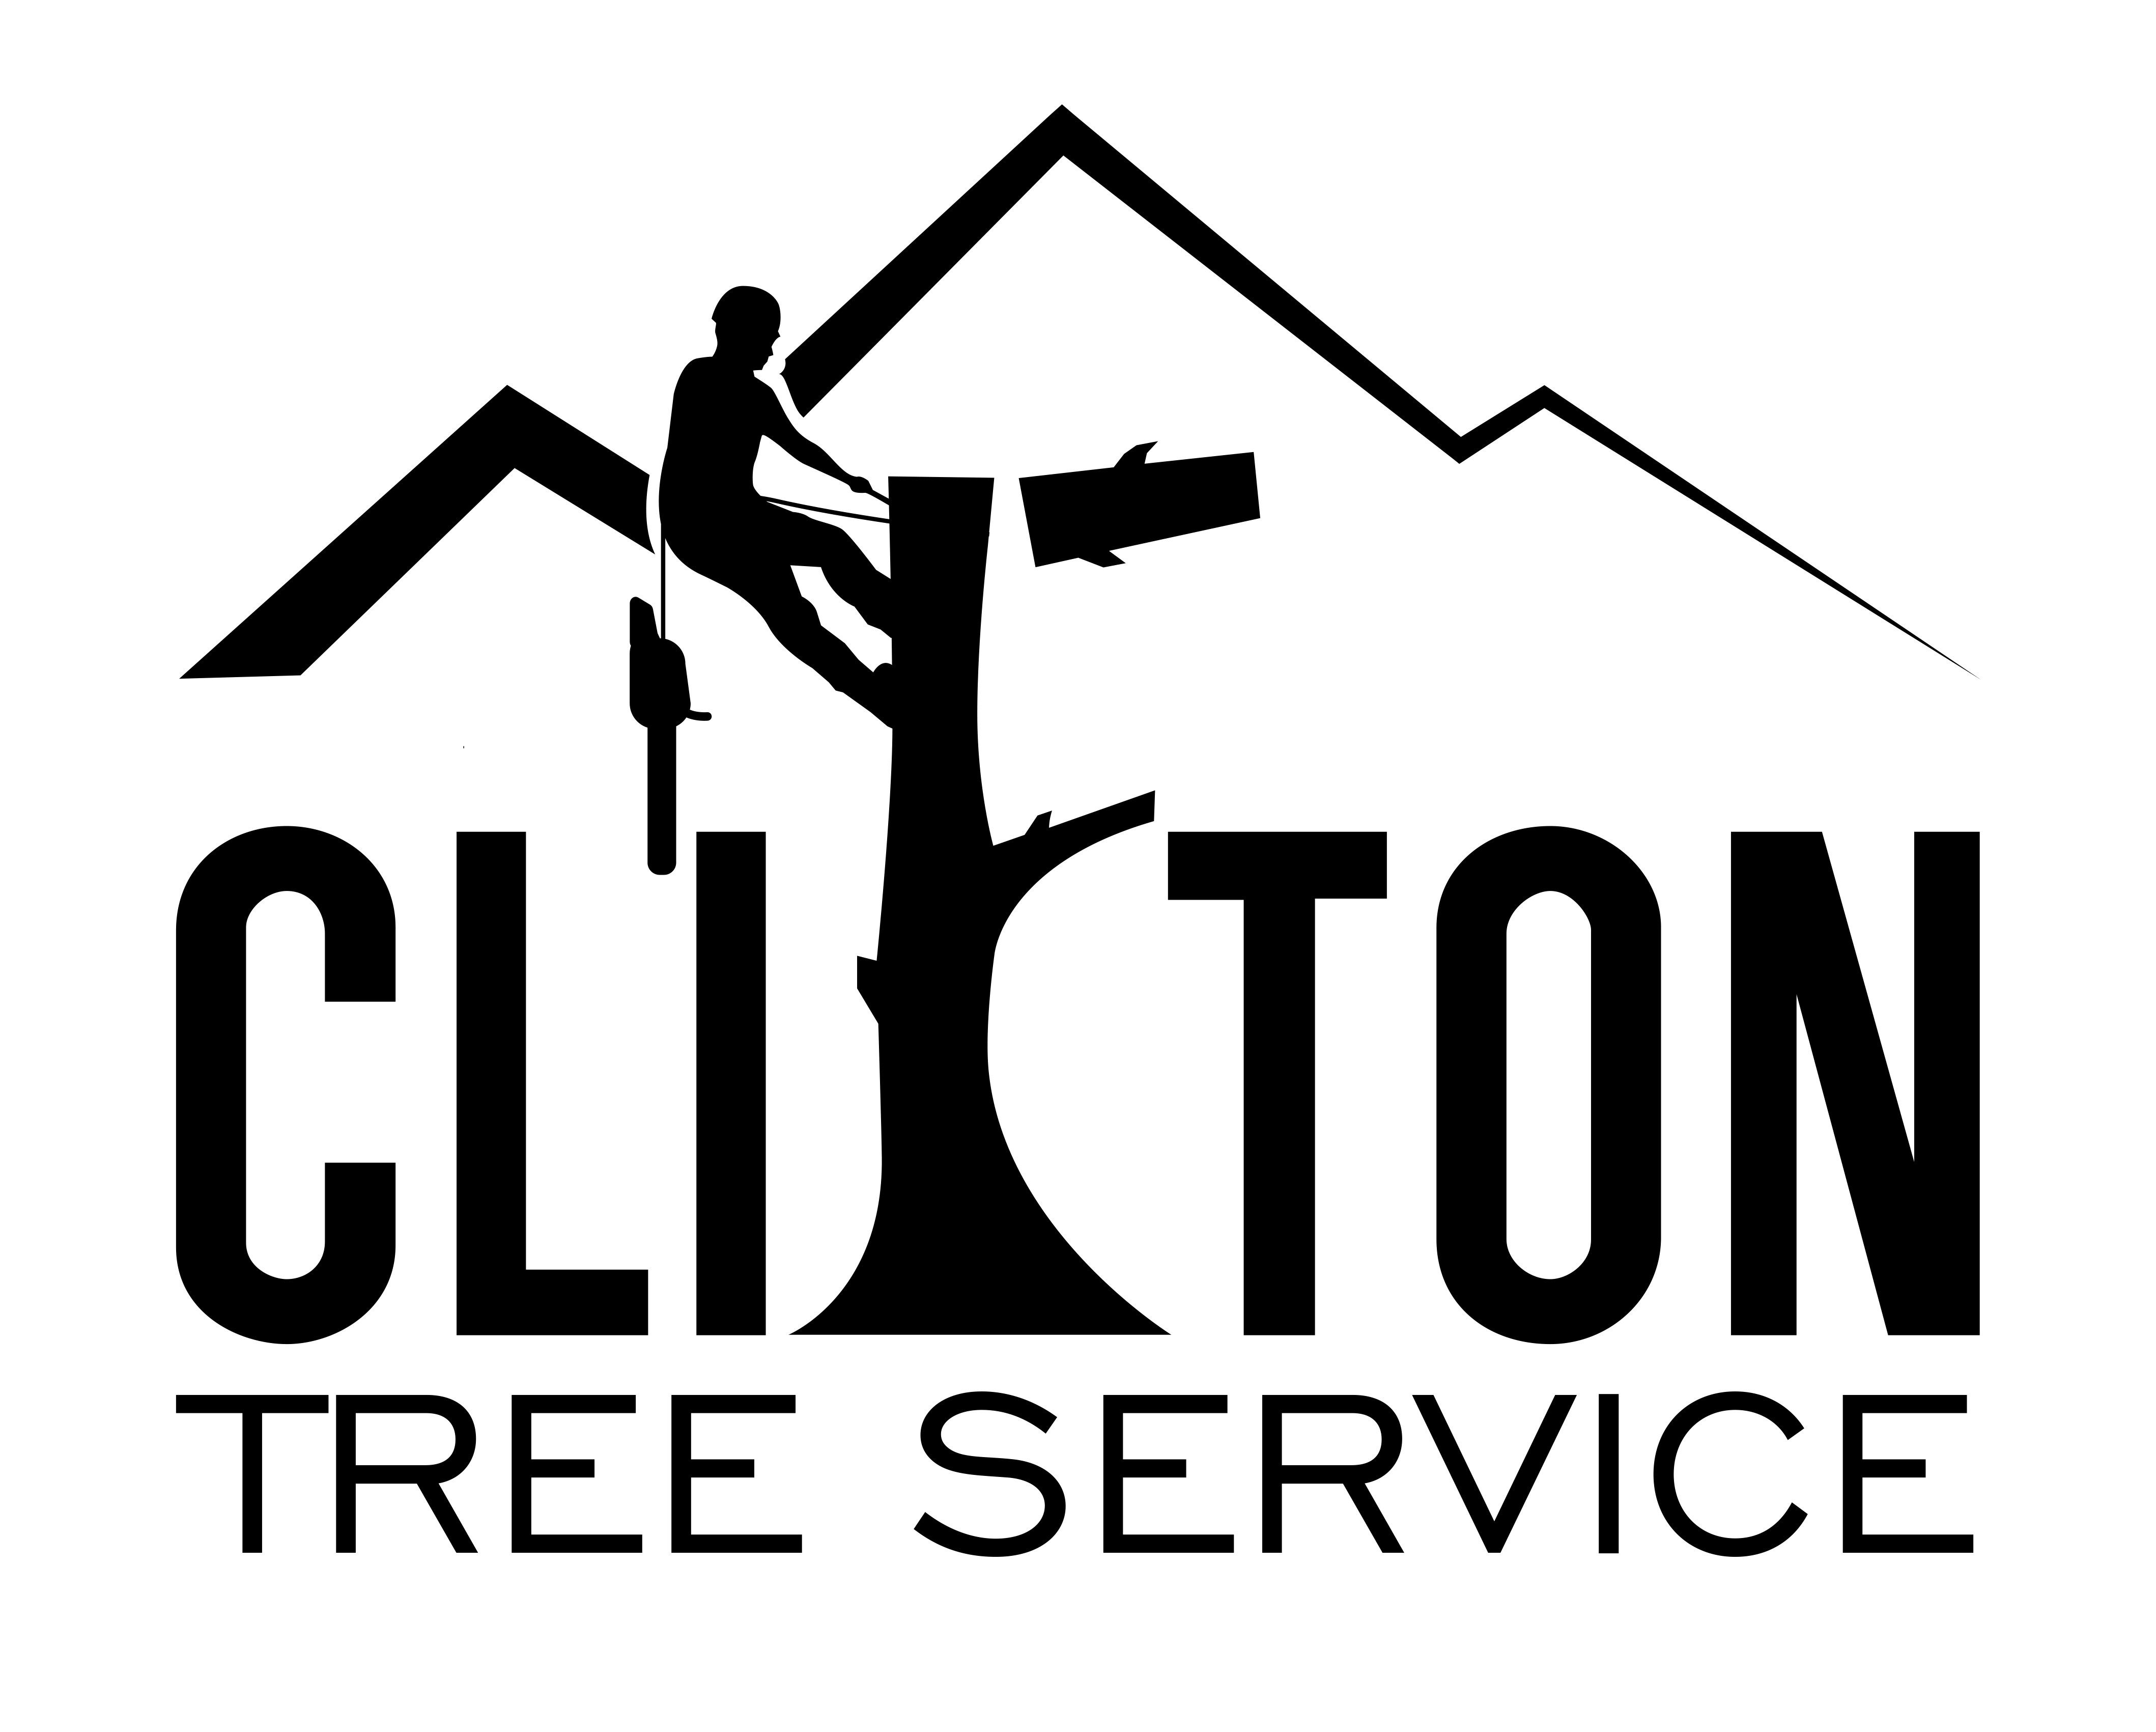 Clifton Tree Service